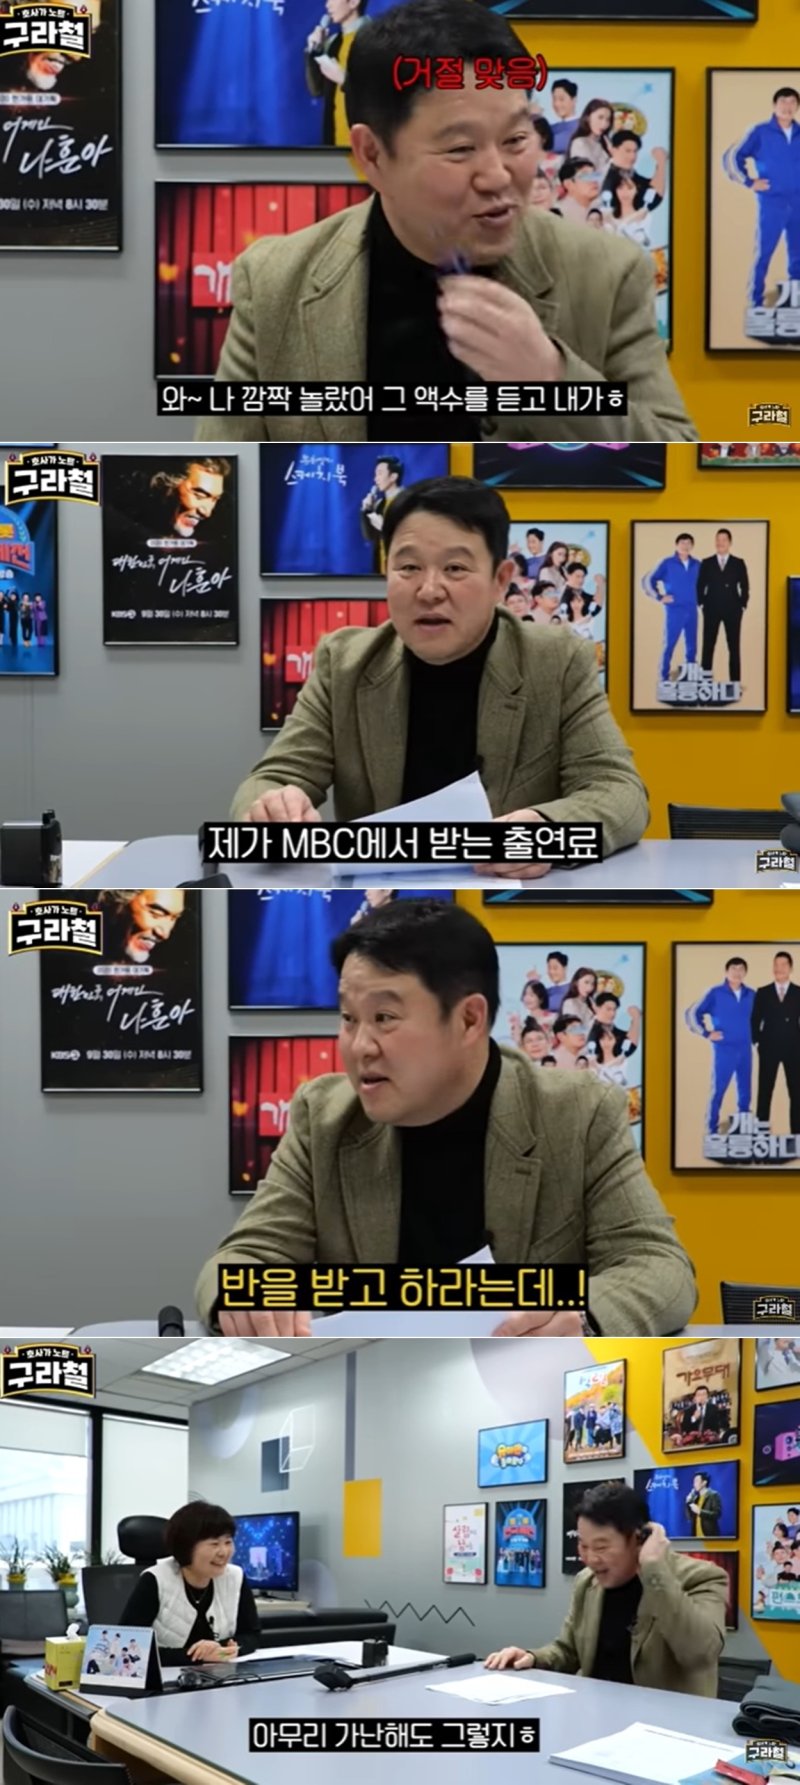 김구라, KBS 프로그램 섭외에 당황한 이유 10년 전 두드림 때보다...